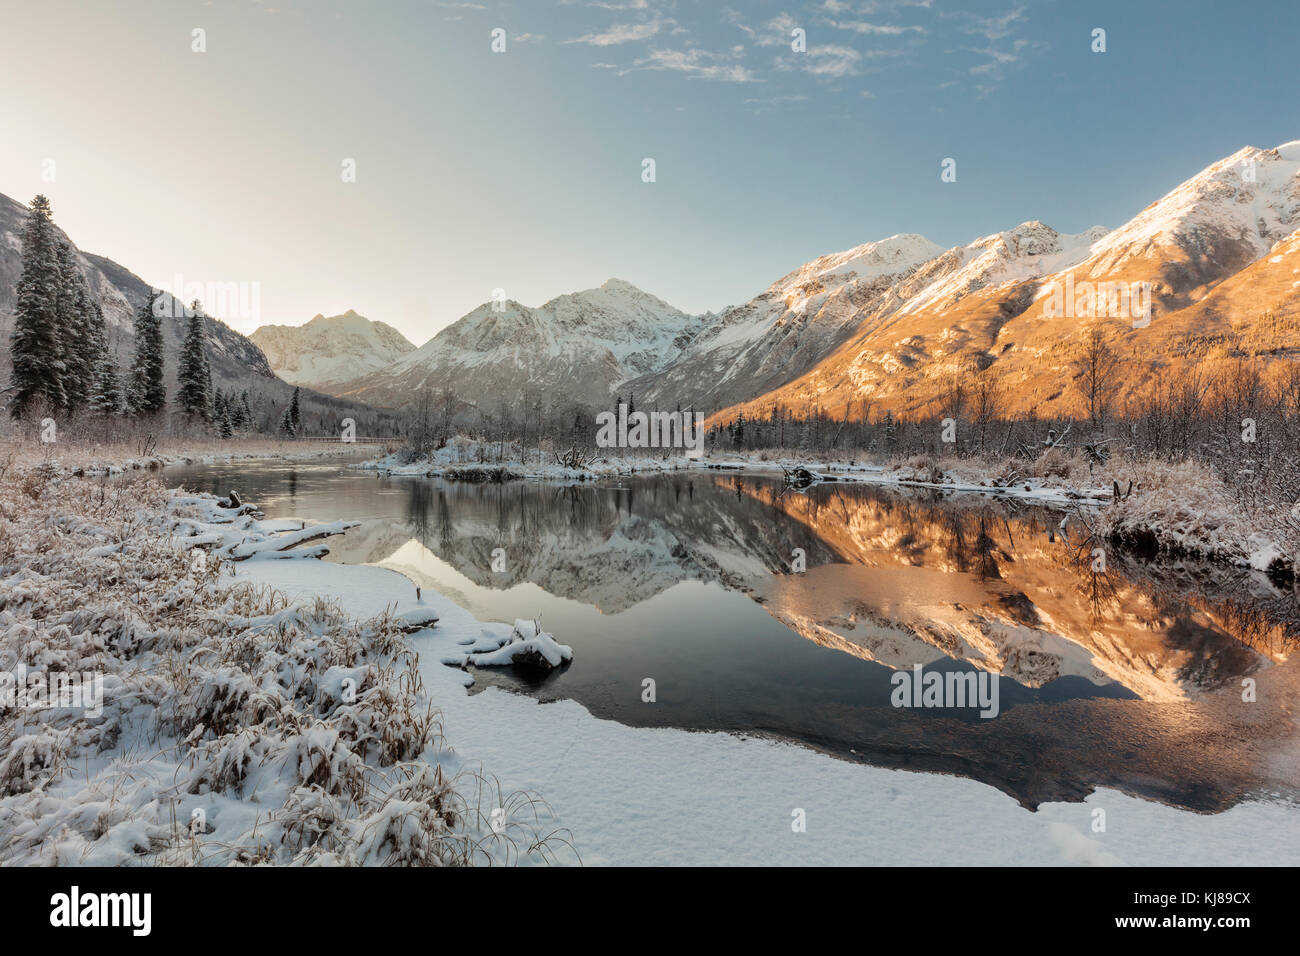 La luce dell'alba illumina la prima neve della stagione mentre ricopre la Eagle River Valley e le Chugach Mountains nell'Alaska centro-meridionale. Foto Stock